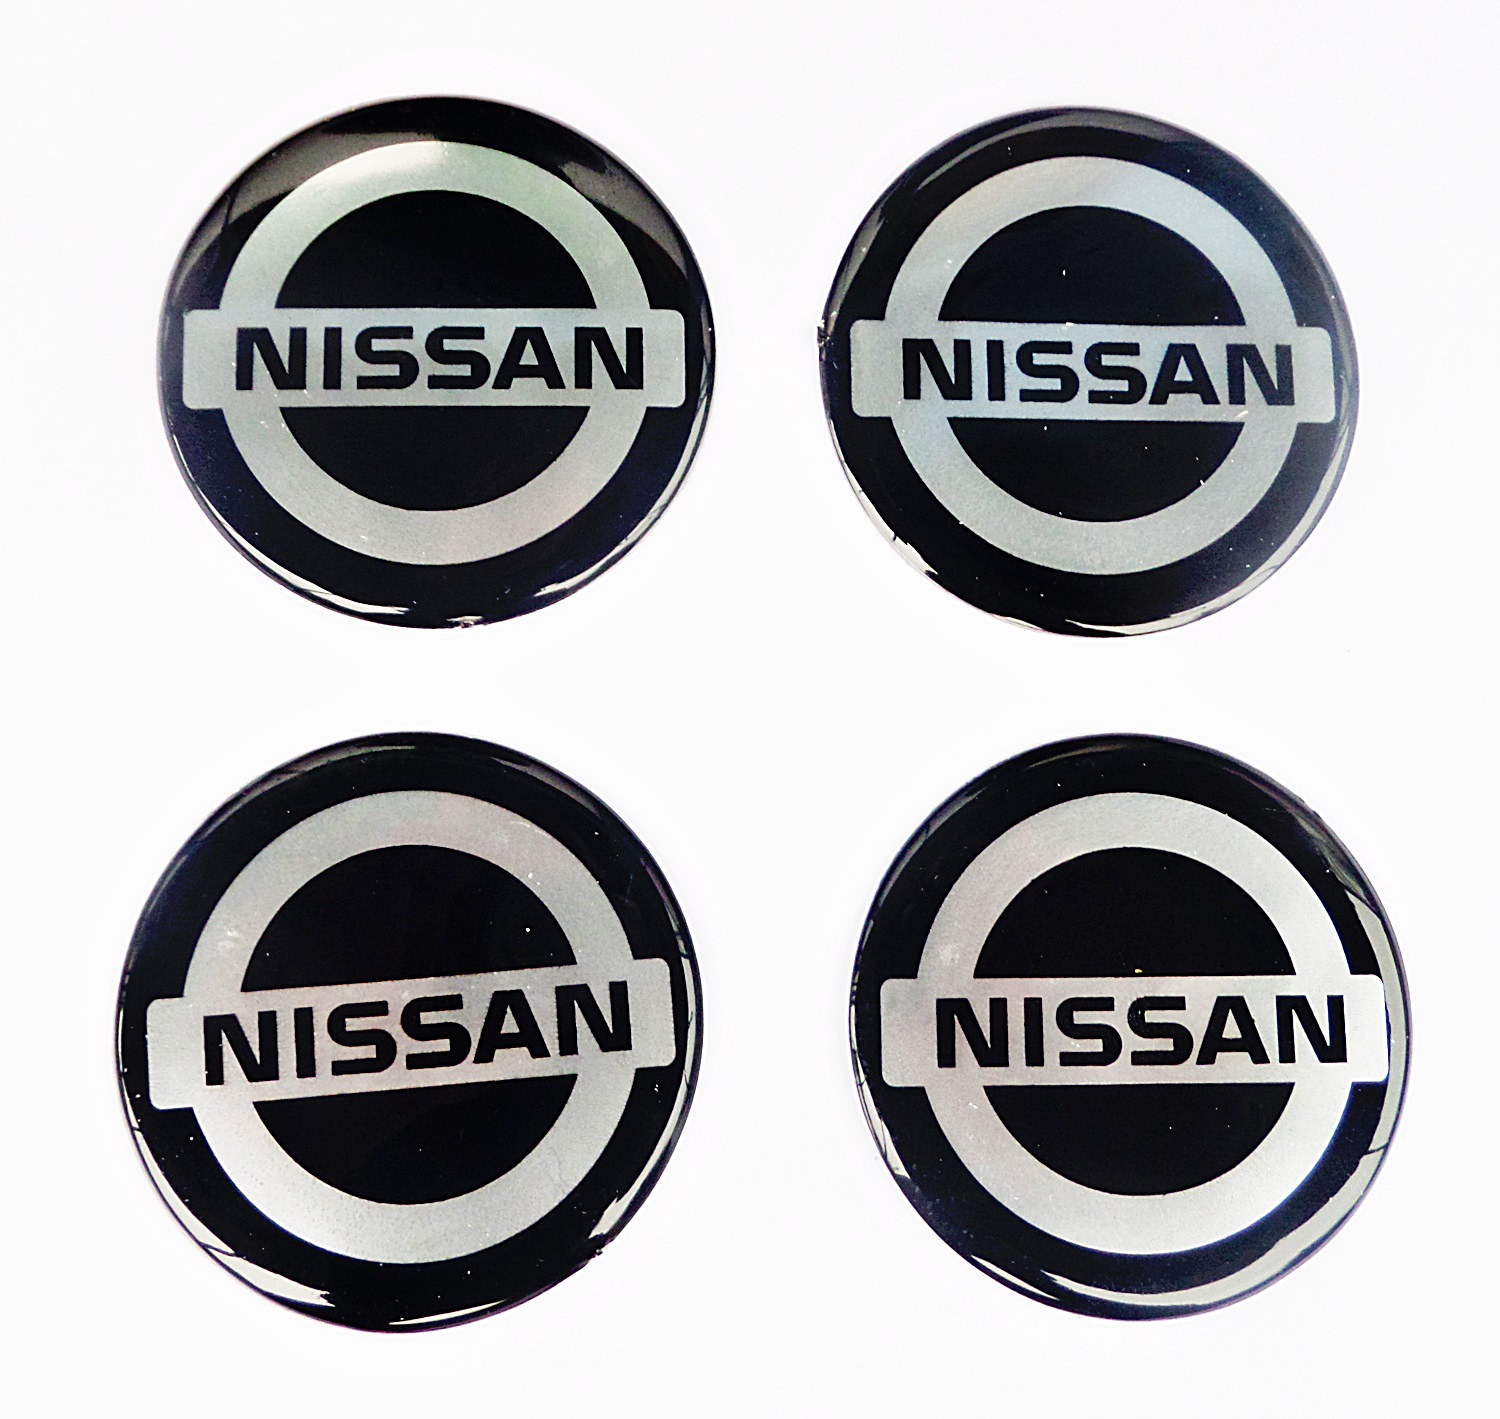 Логотип колпачка на диск. Эмблема Ниссан. Эмблема Ниссан на колесные диски. Эмблеме Ниссан на колпачки. Наклейки на диски с логотипом Ниссан.